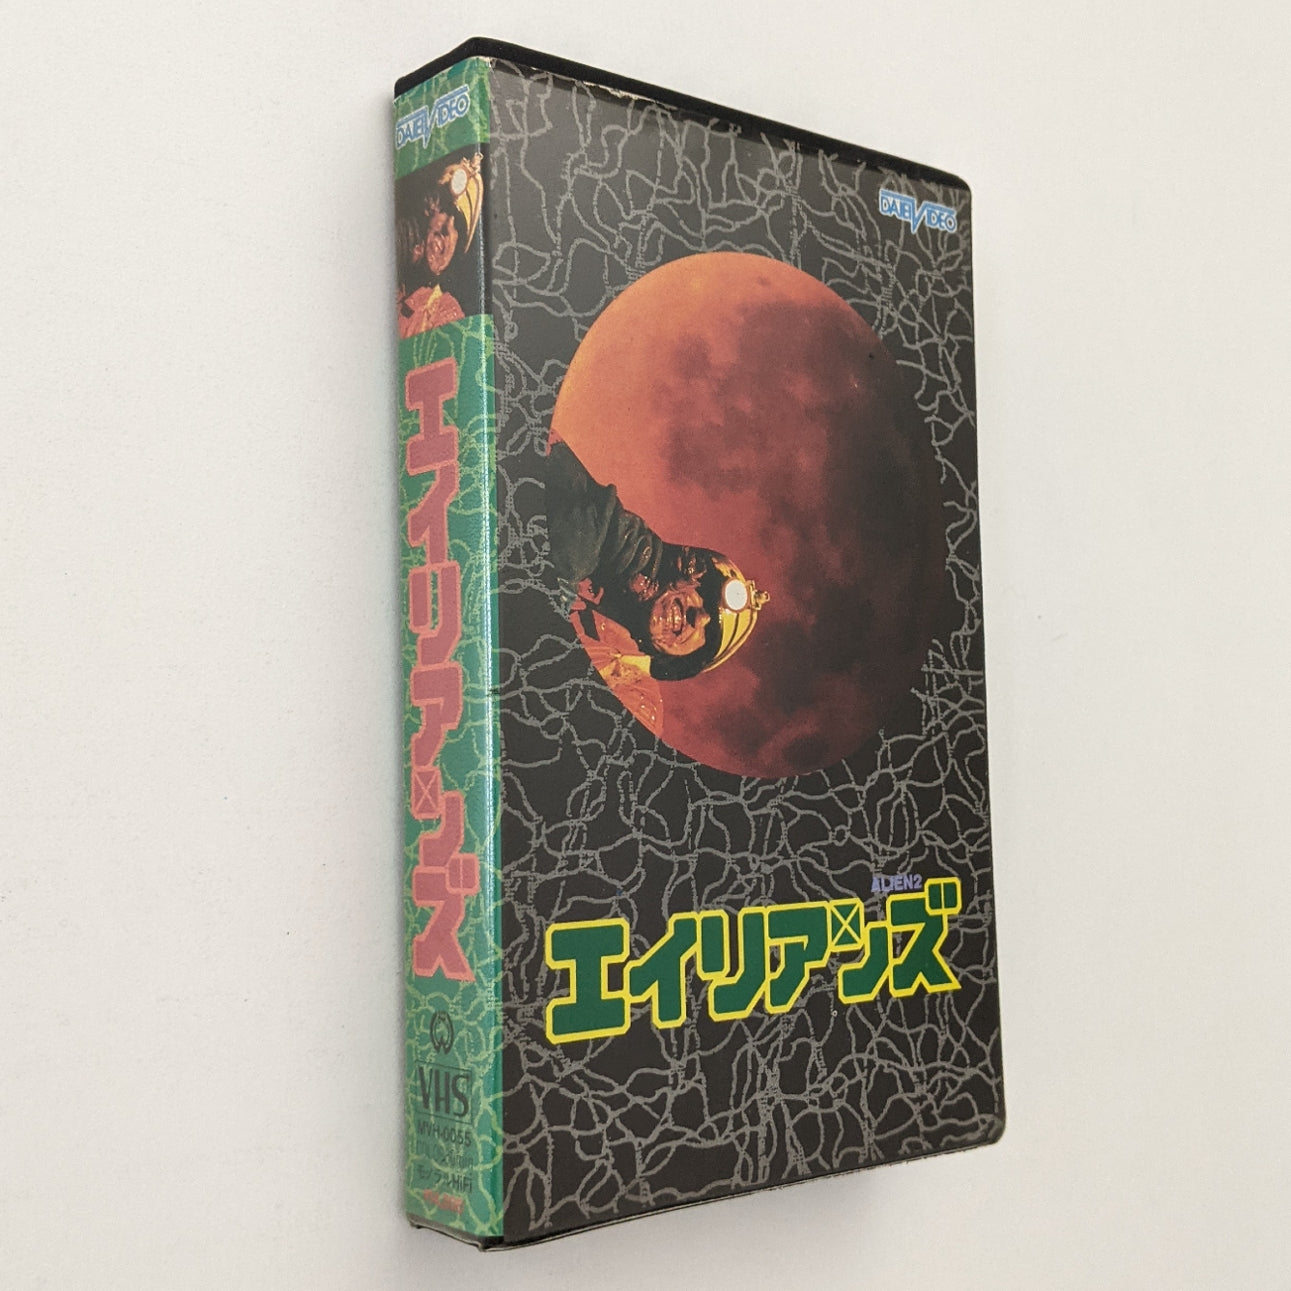 Alien 2 : On Earth (1980) Japanese VHS